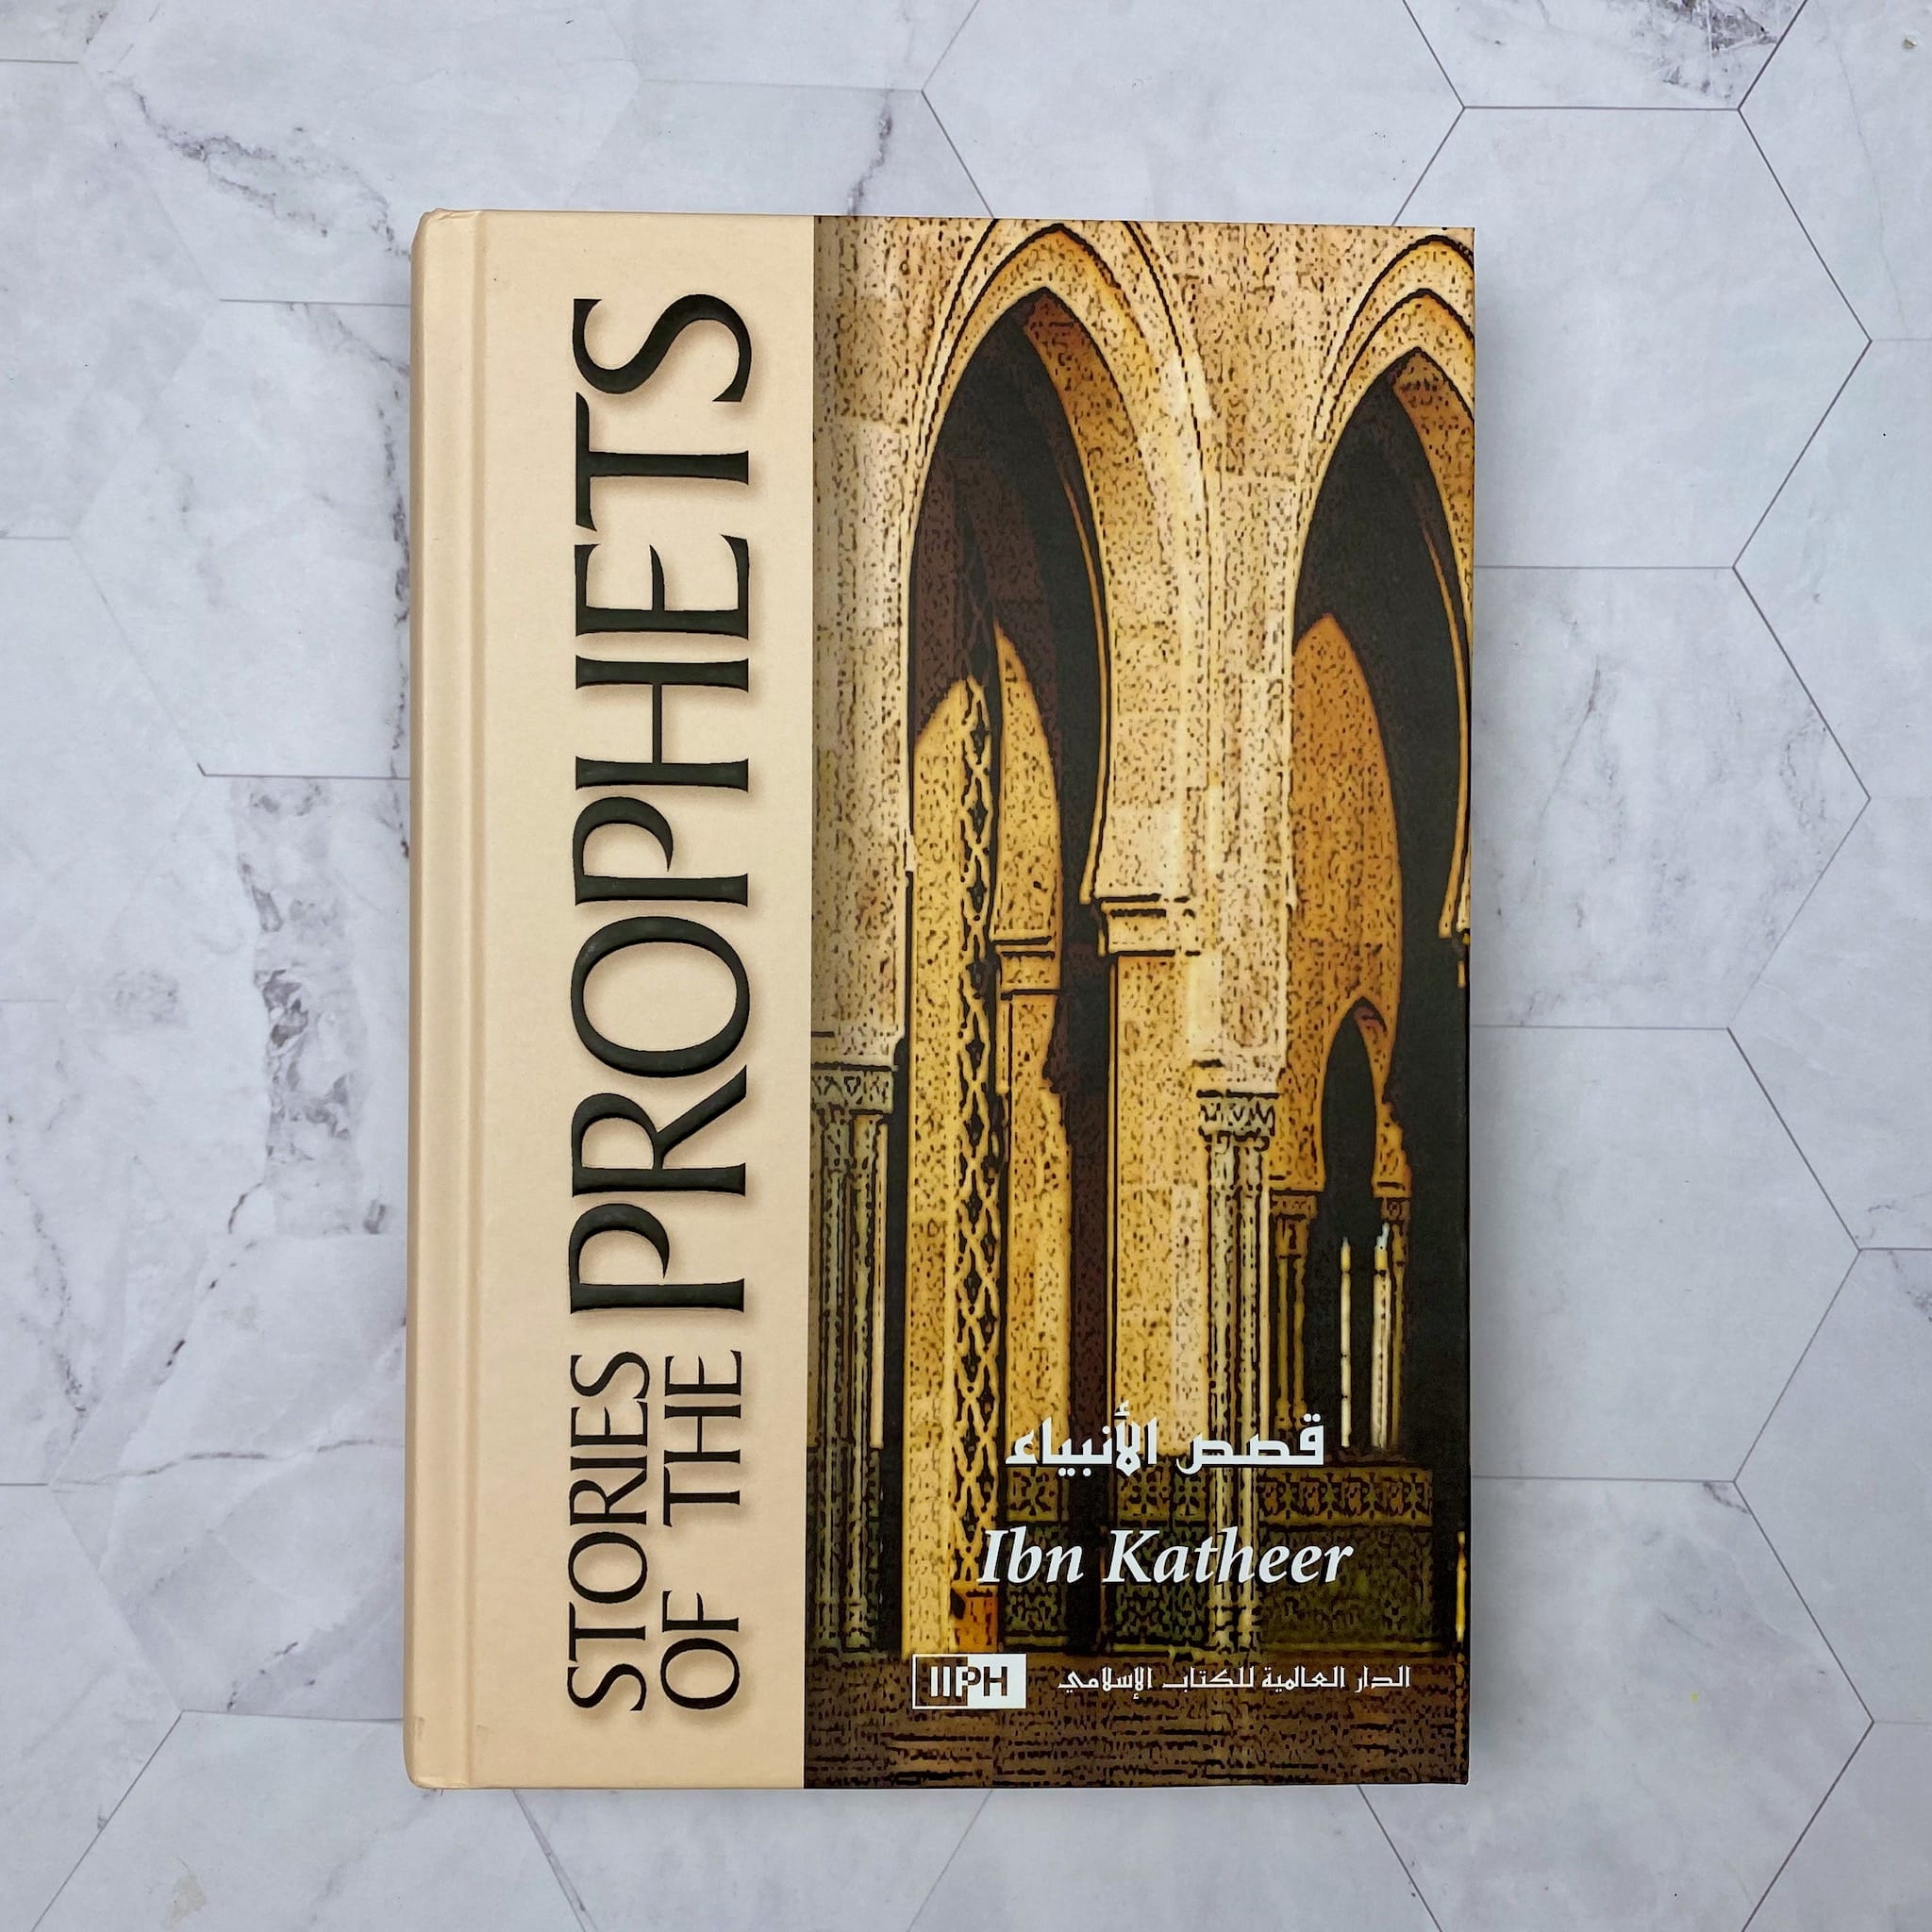 Stories of the Prophets - Islamic Book - Fajr Noor